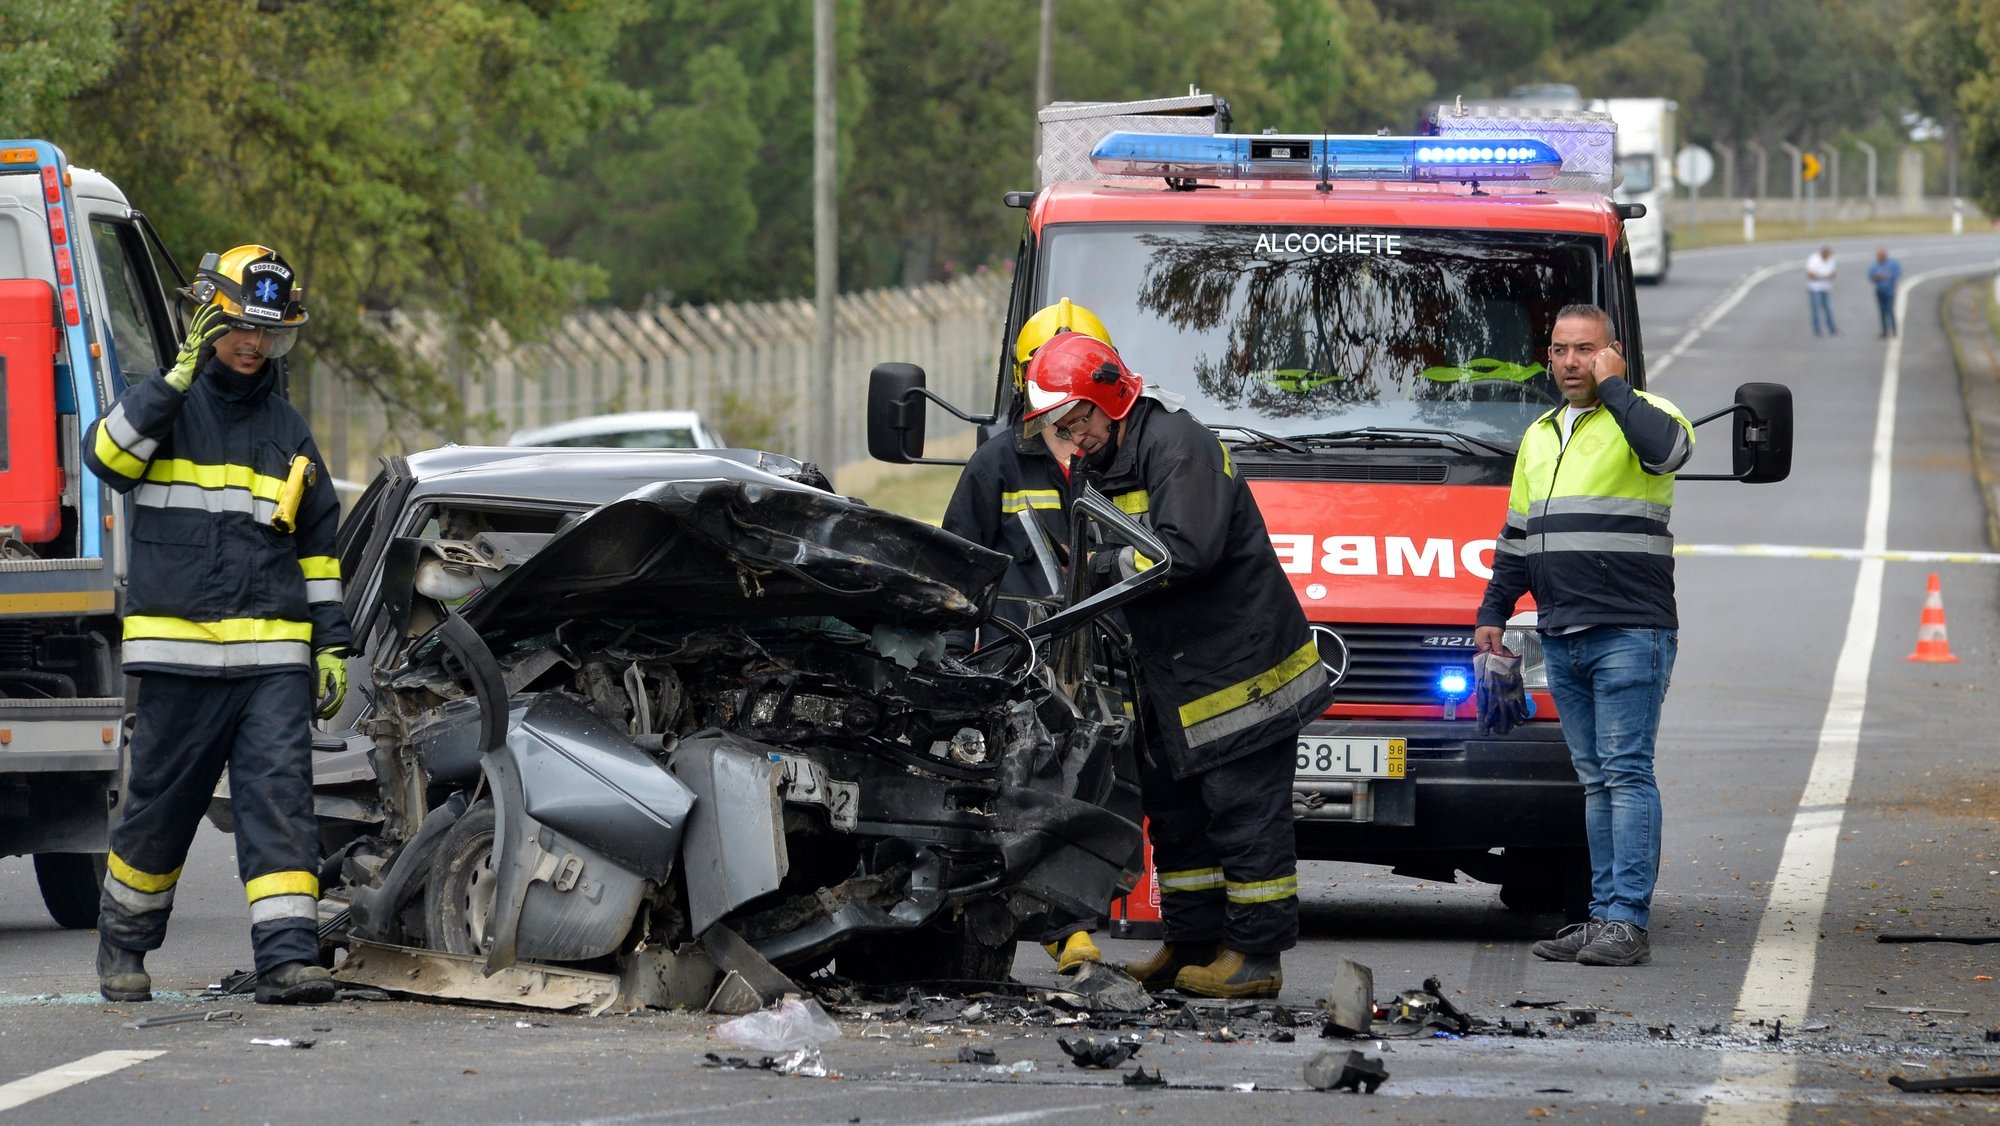 Uma colisão frontal entre dois veículos ligeiros causou hoje dois mortos e três feridos junto à Academia do Sporting, em Alcochete, 09 de maio 2019. RUI MINDERICO/LUSA